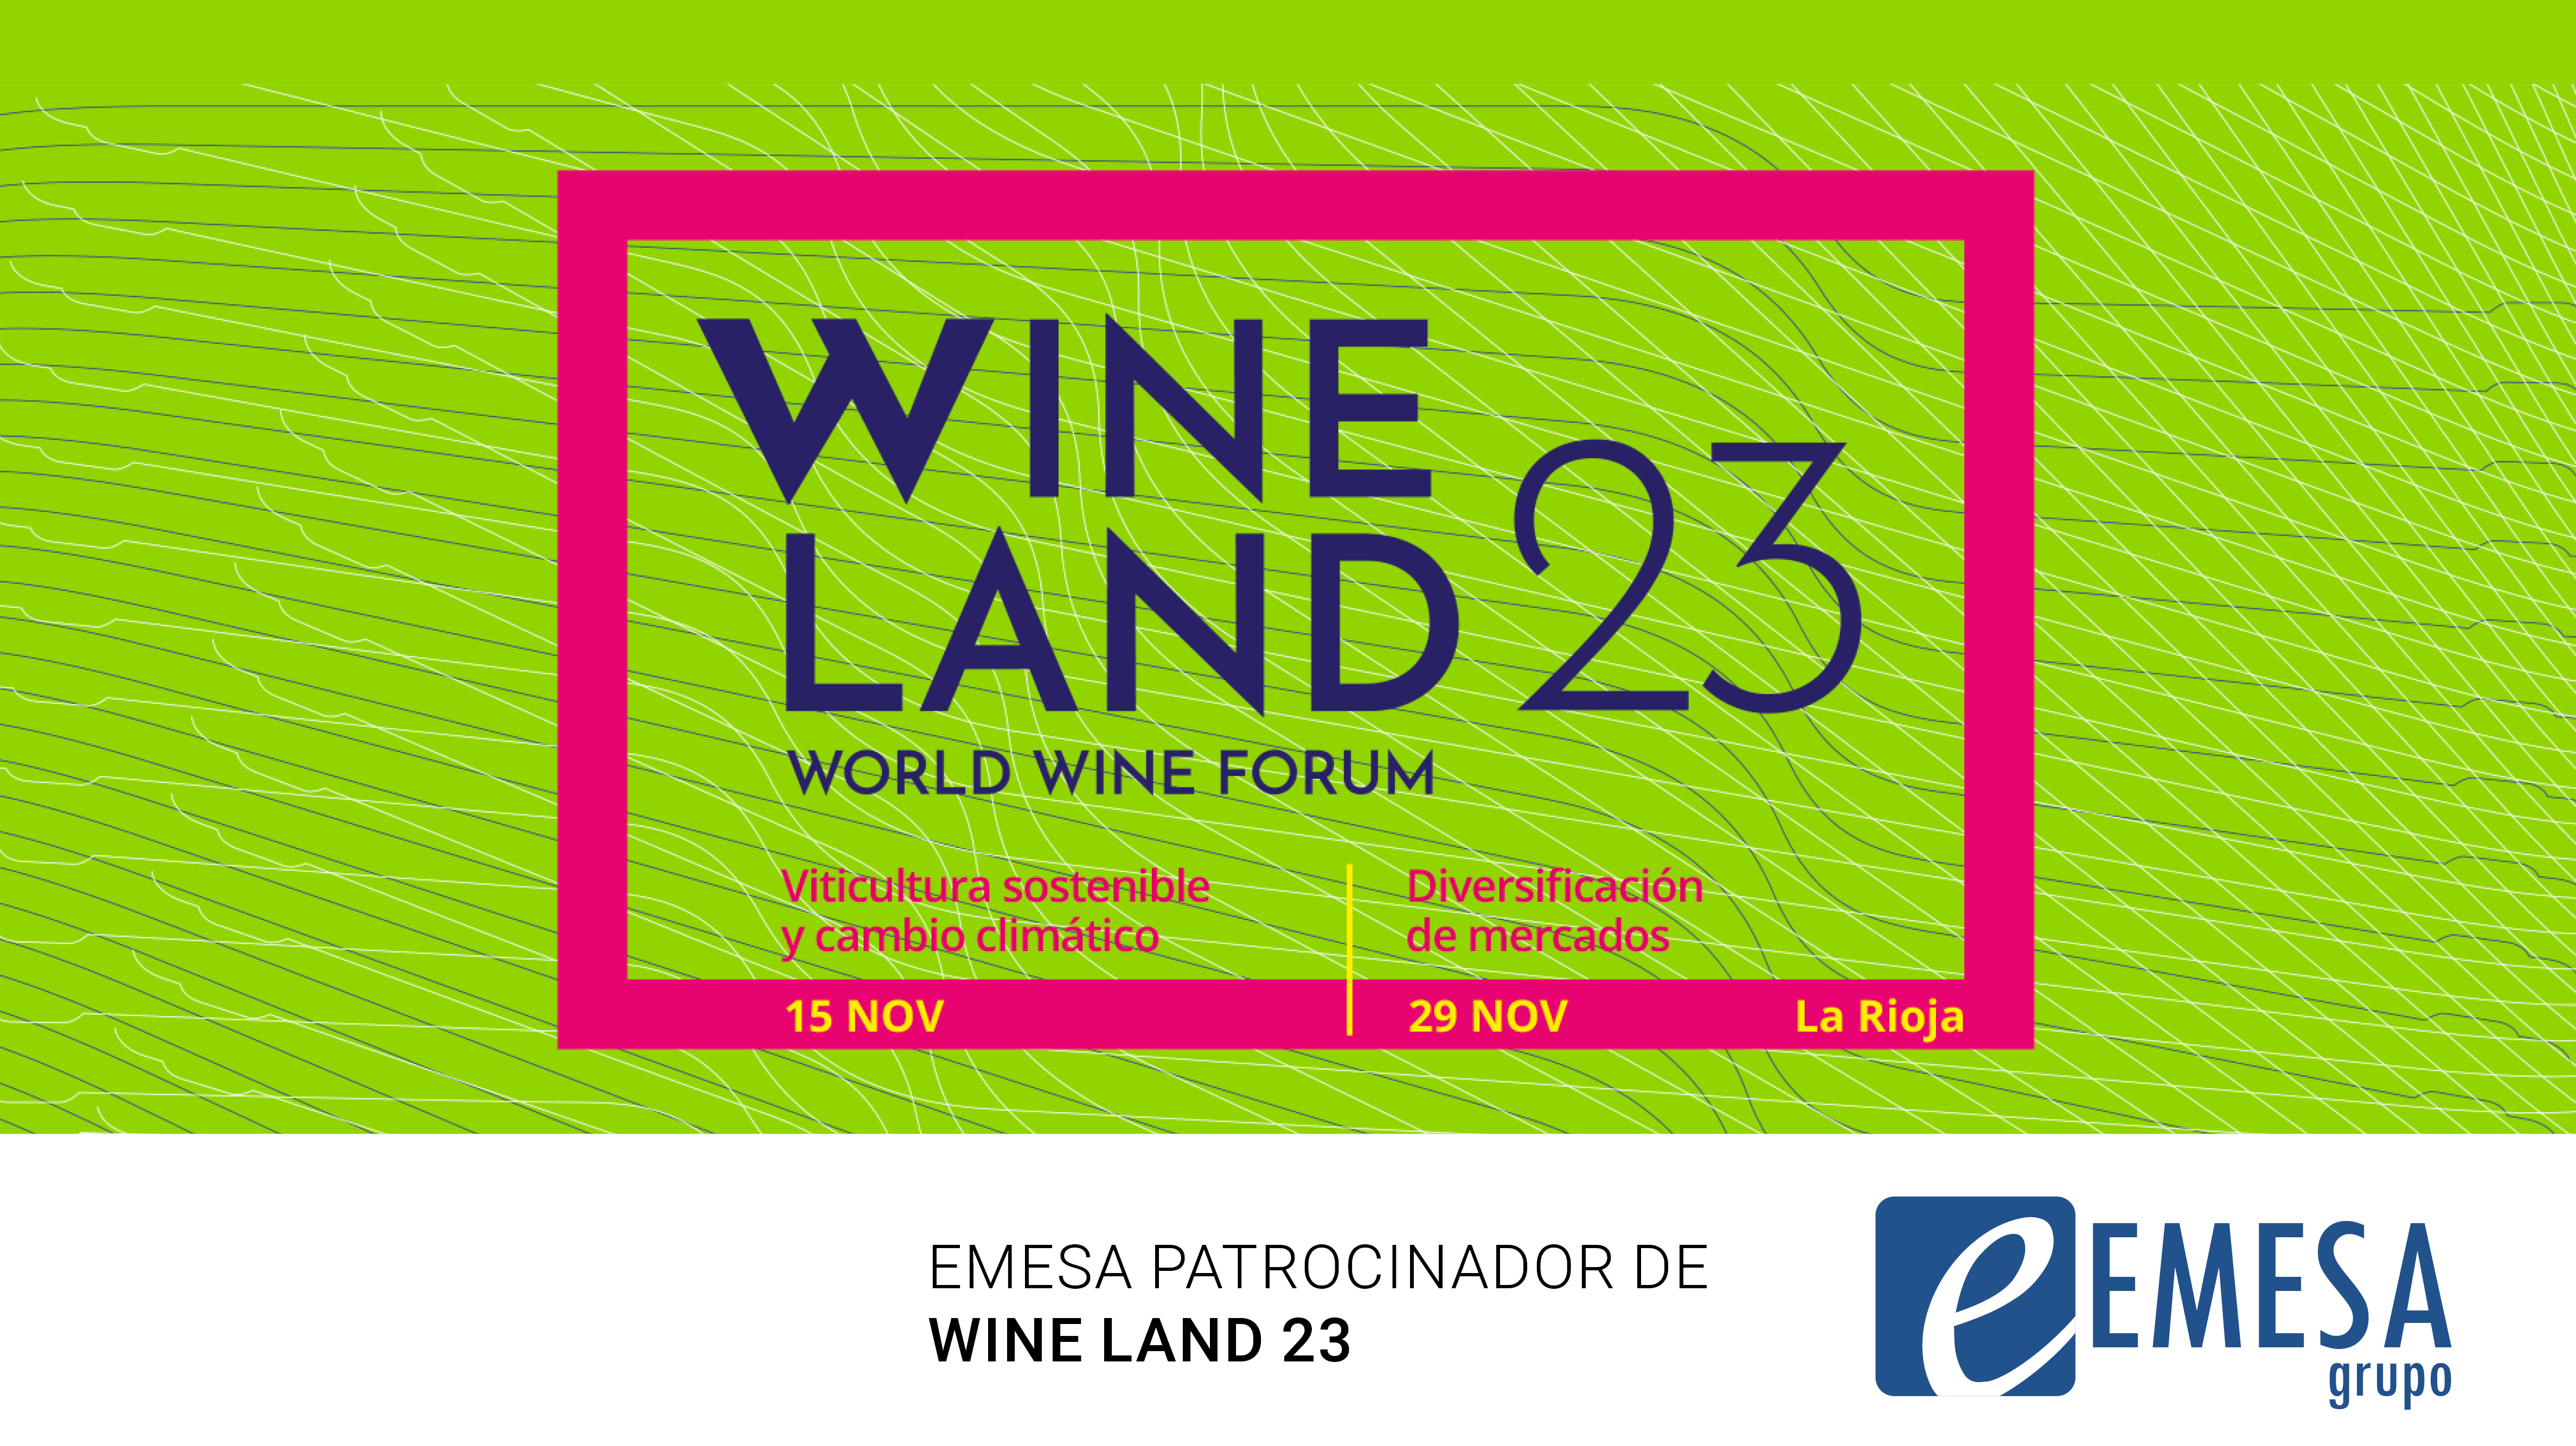 EMESA patrocinador de Wine Land 23